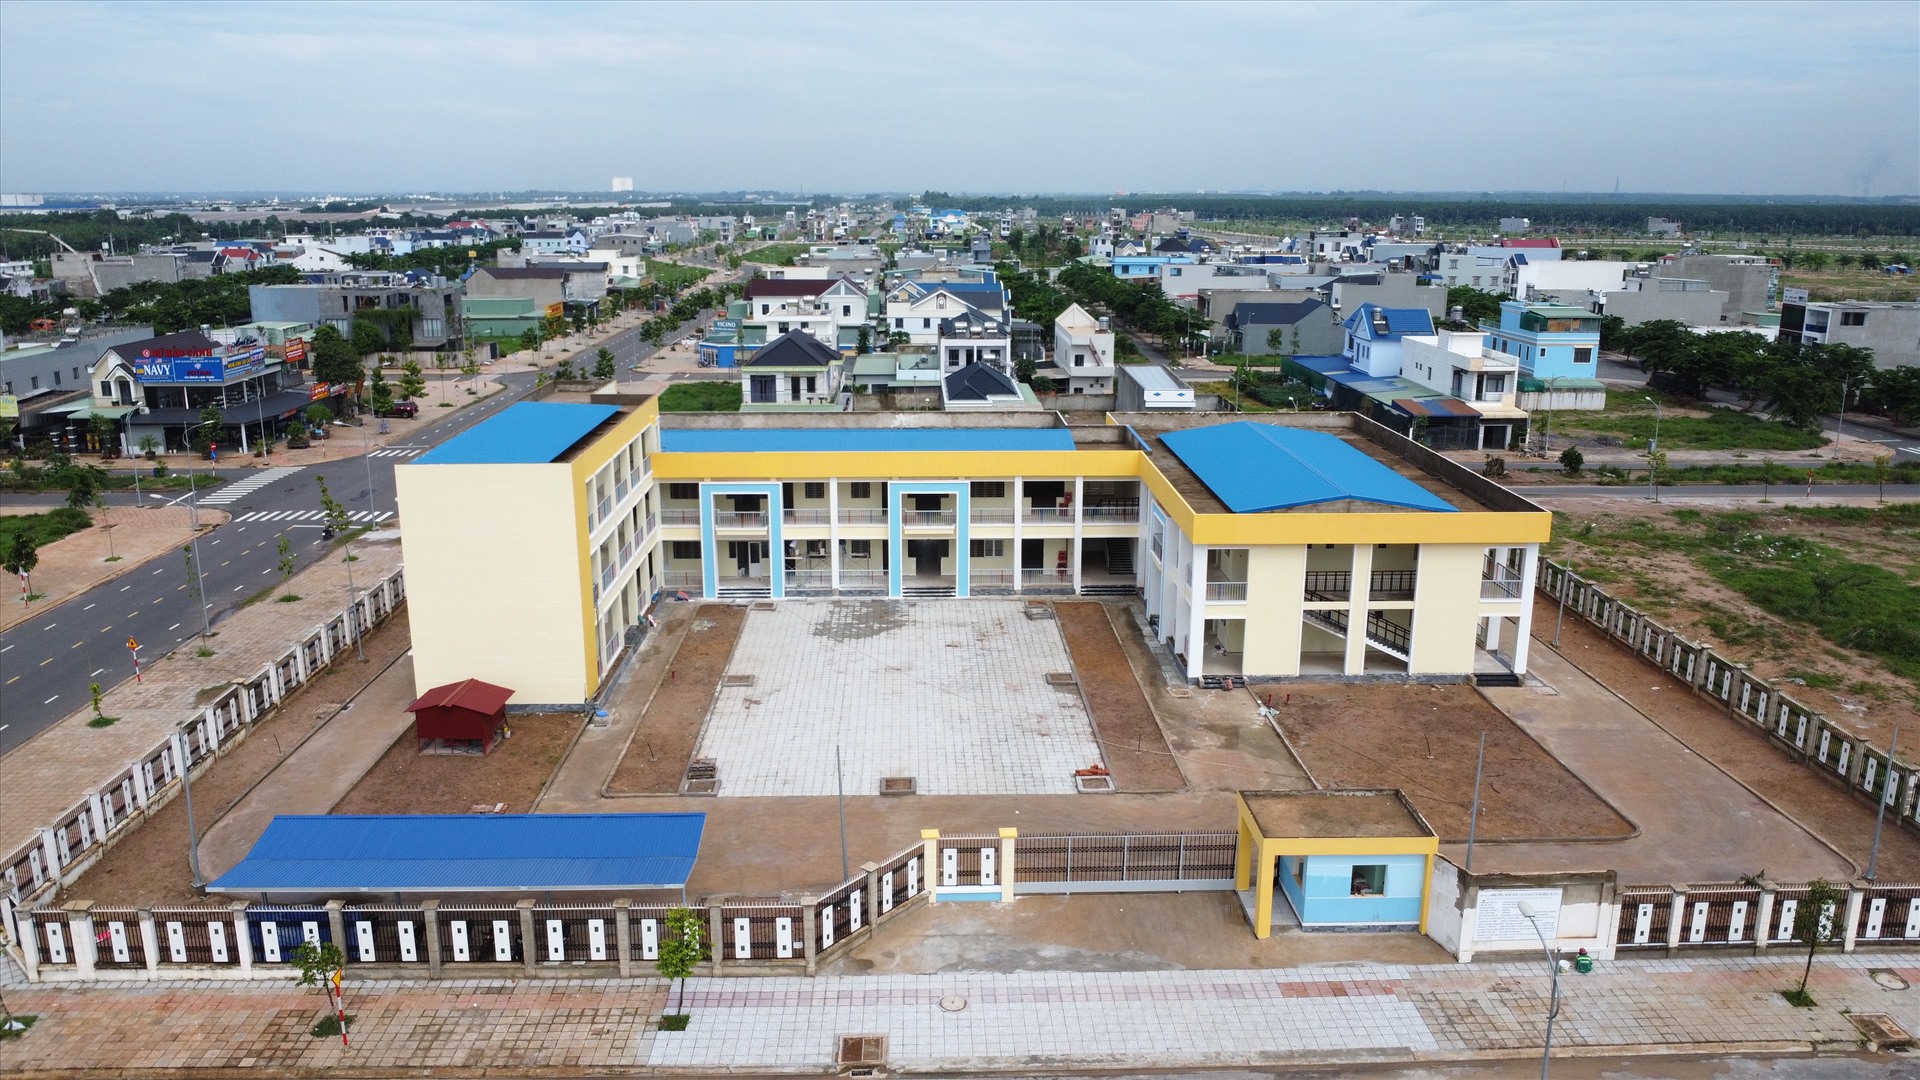 Một trường mầm non tại lô đất II-NT-2 thuộc gói thầu số 26 trong khu tái định cư Lộc An - Bình Sơn có giá trị gần 15 tỉ đồng đang được hoàn thiện chuẩn bị cho năm học mới.